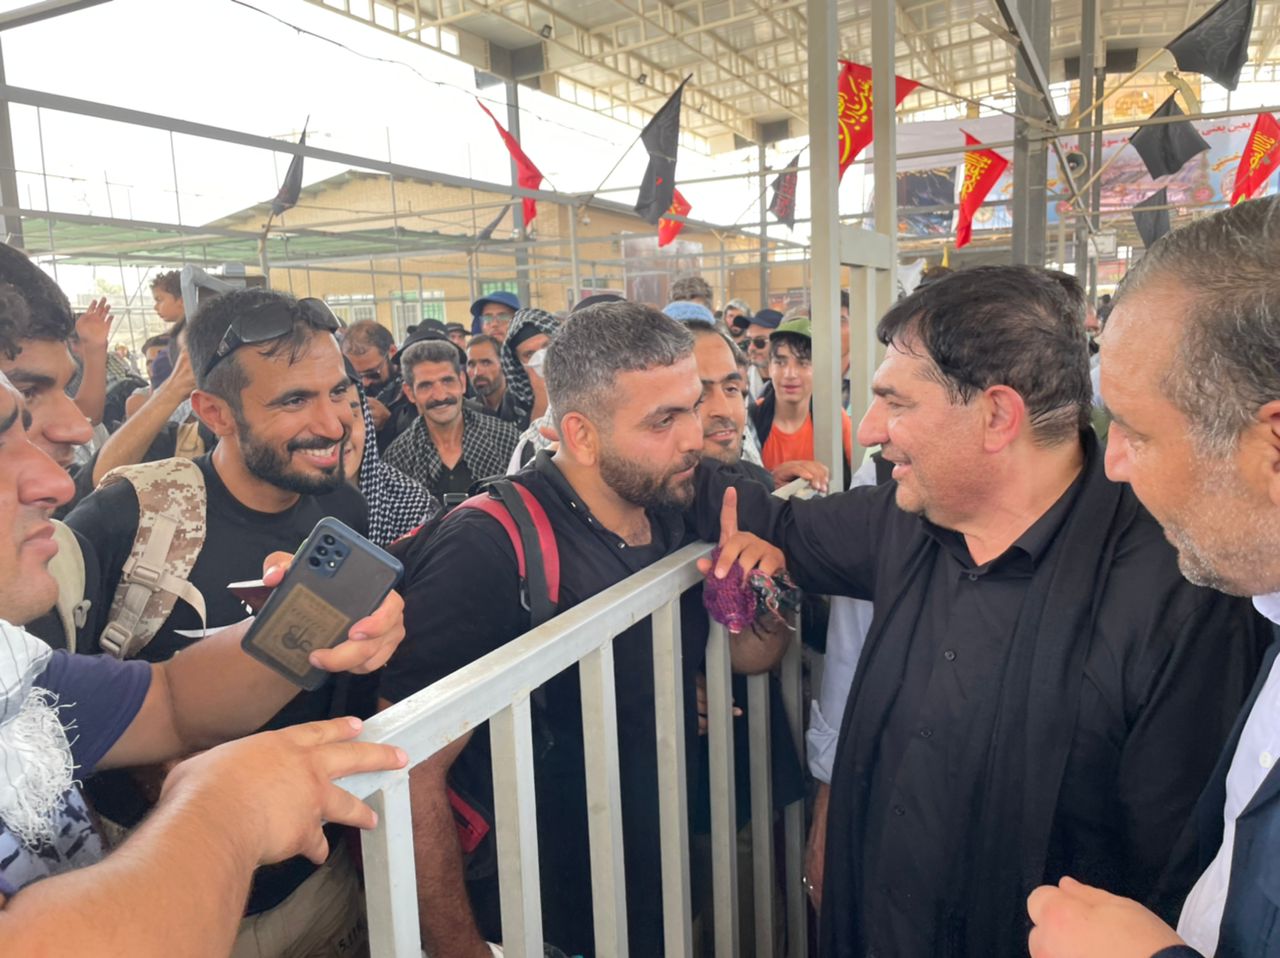 بازدید مجدد “مخبر” از مرز مهران در آستانه اربعین حسینی/ تاکید بر مدیریت زمانی زائران برای سفر به عراق